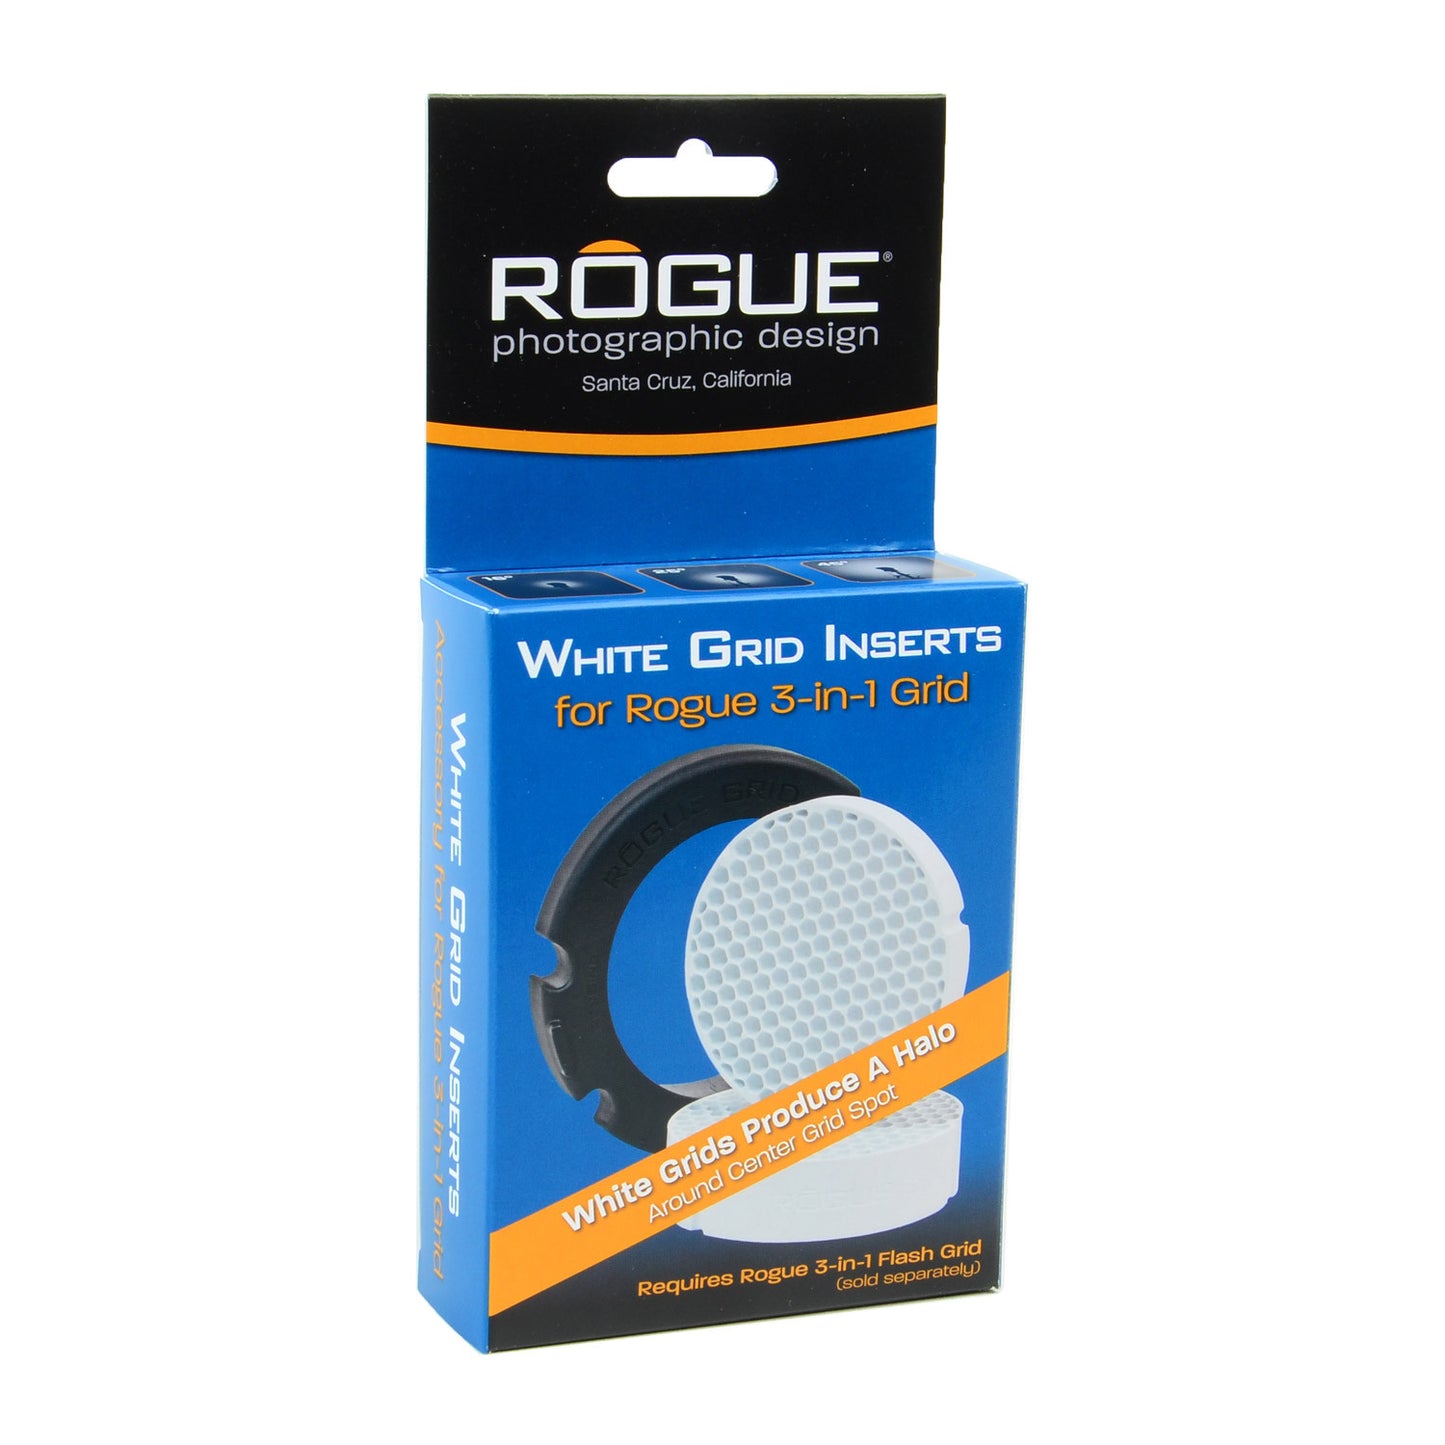 
                  
                    Weiße Gittereinsätze für Rogue 3-in-1 Grid
                  
                